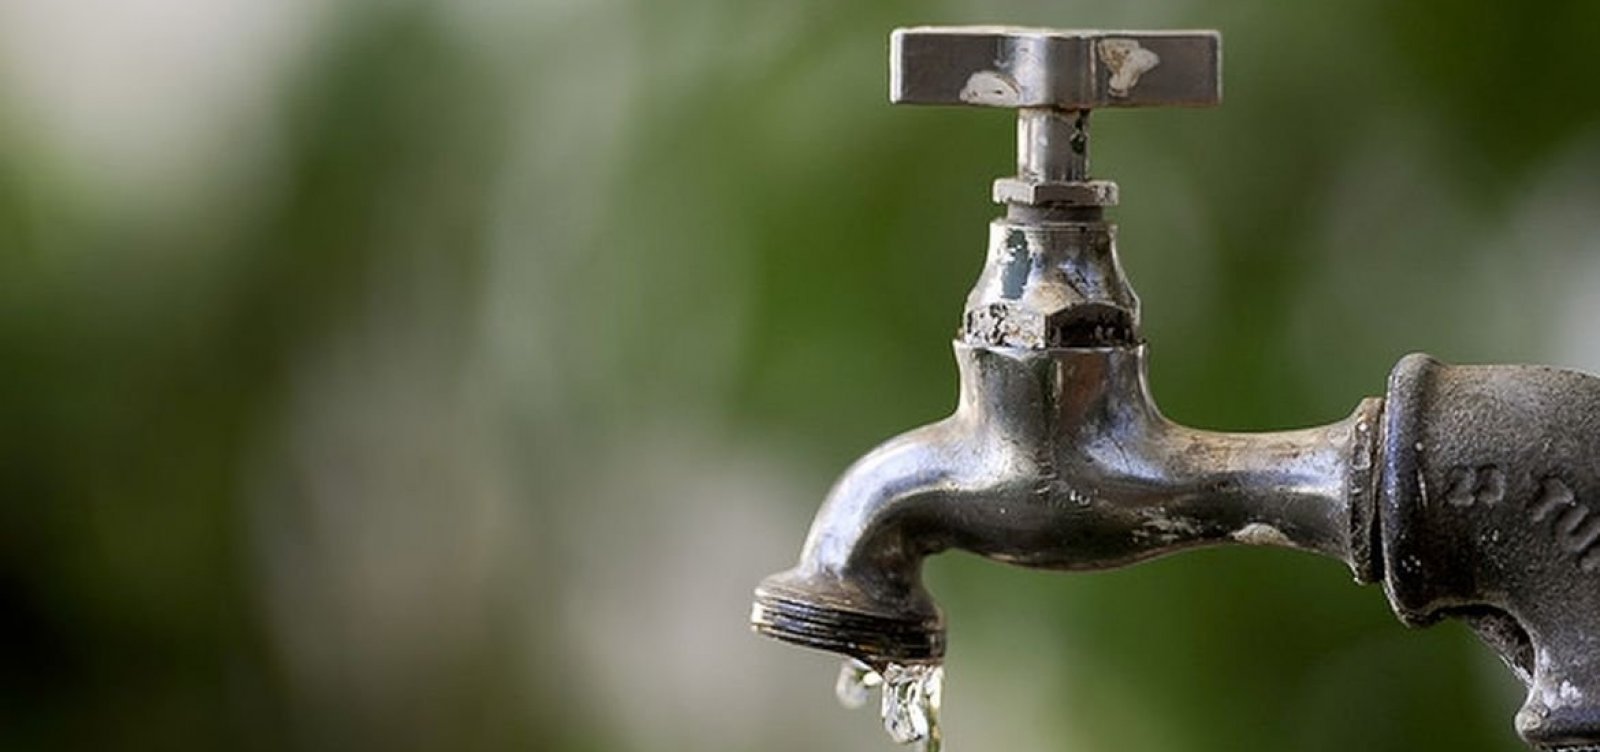 Correção de vazamento interrompe abastecimento de água na região Narandiba